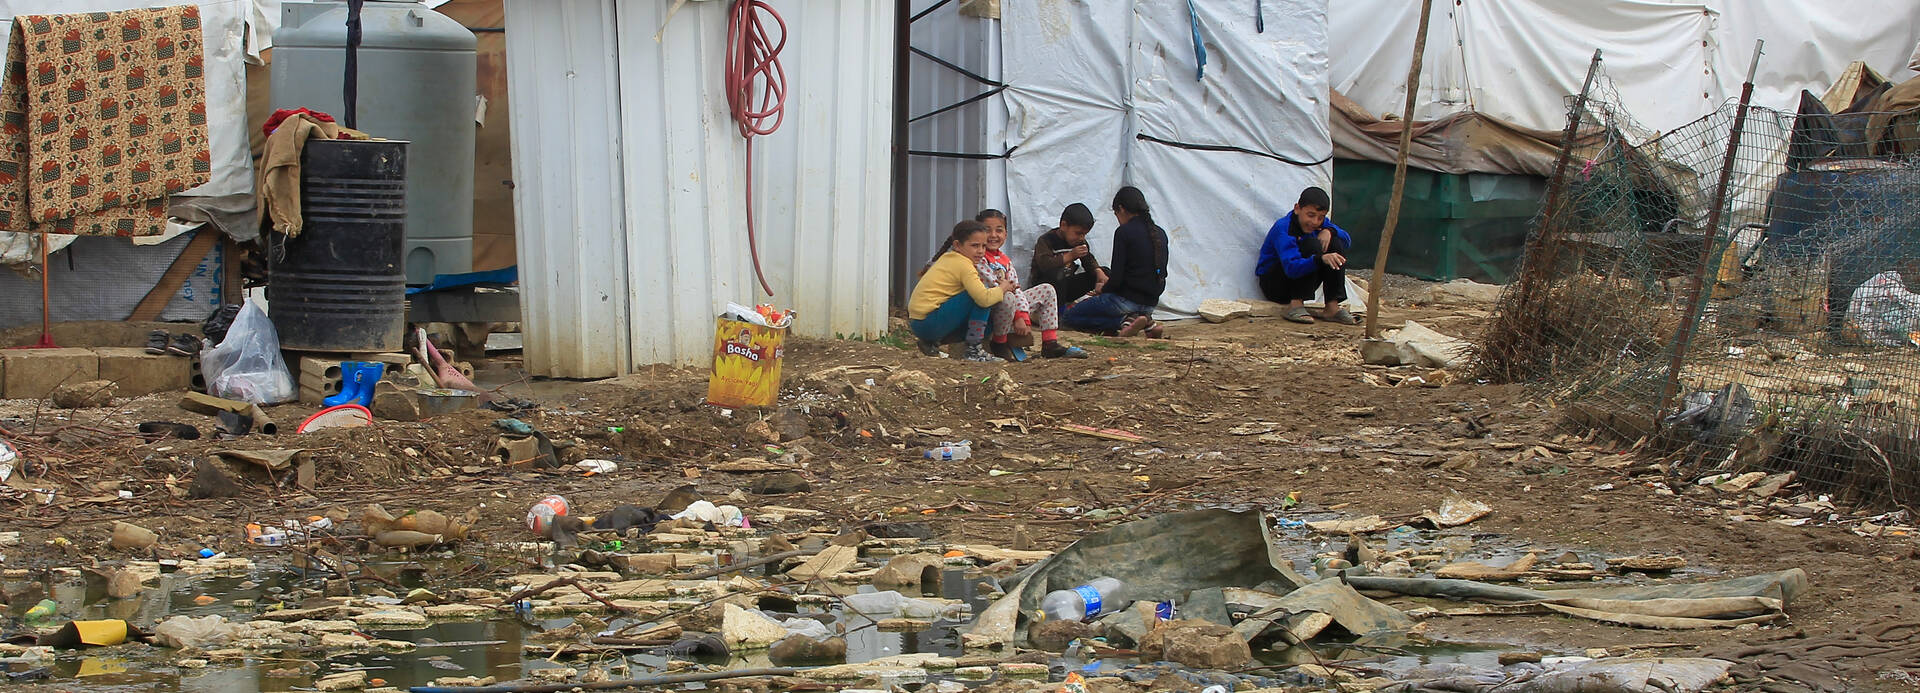 Syrische Flüchtlingskinder sitzen auf dem Boden in einem Flüchtlingslager